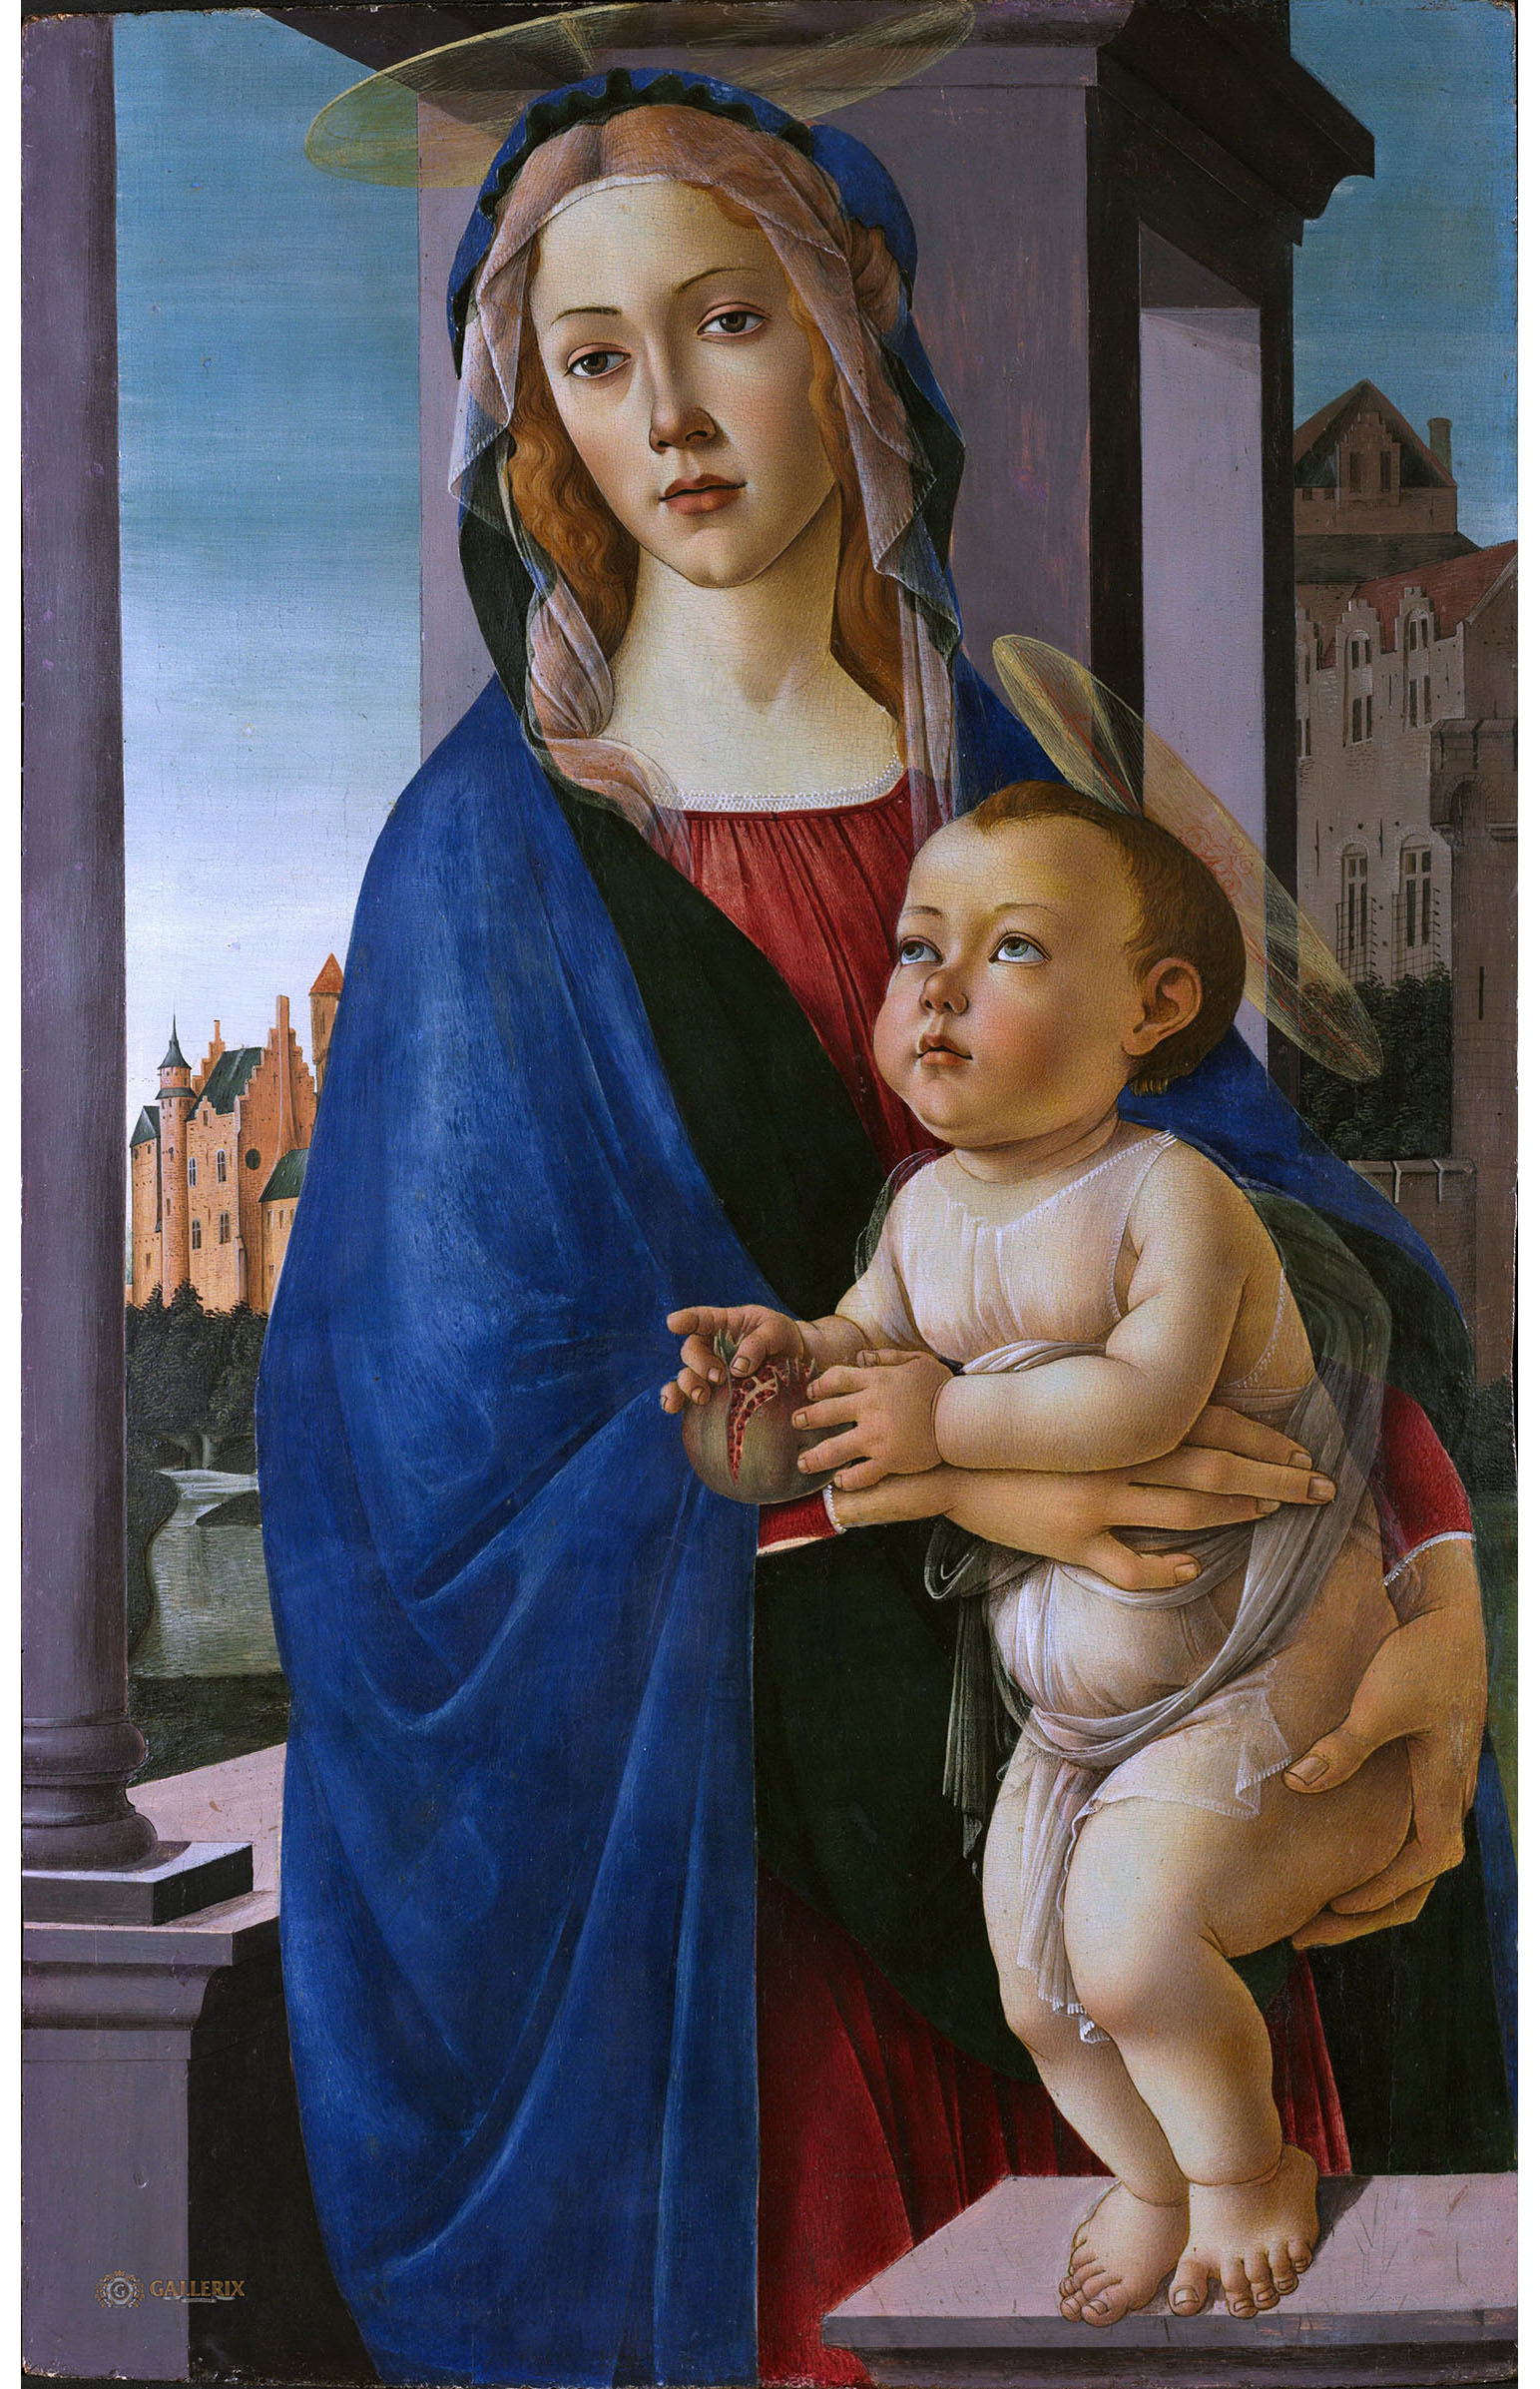 Сандро Боттичелли. "Мадонна с Младенцем". Около 1490. Музей искусств Фогт Гарвардского университета, Кембридж.